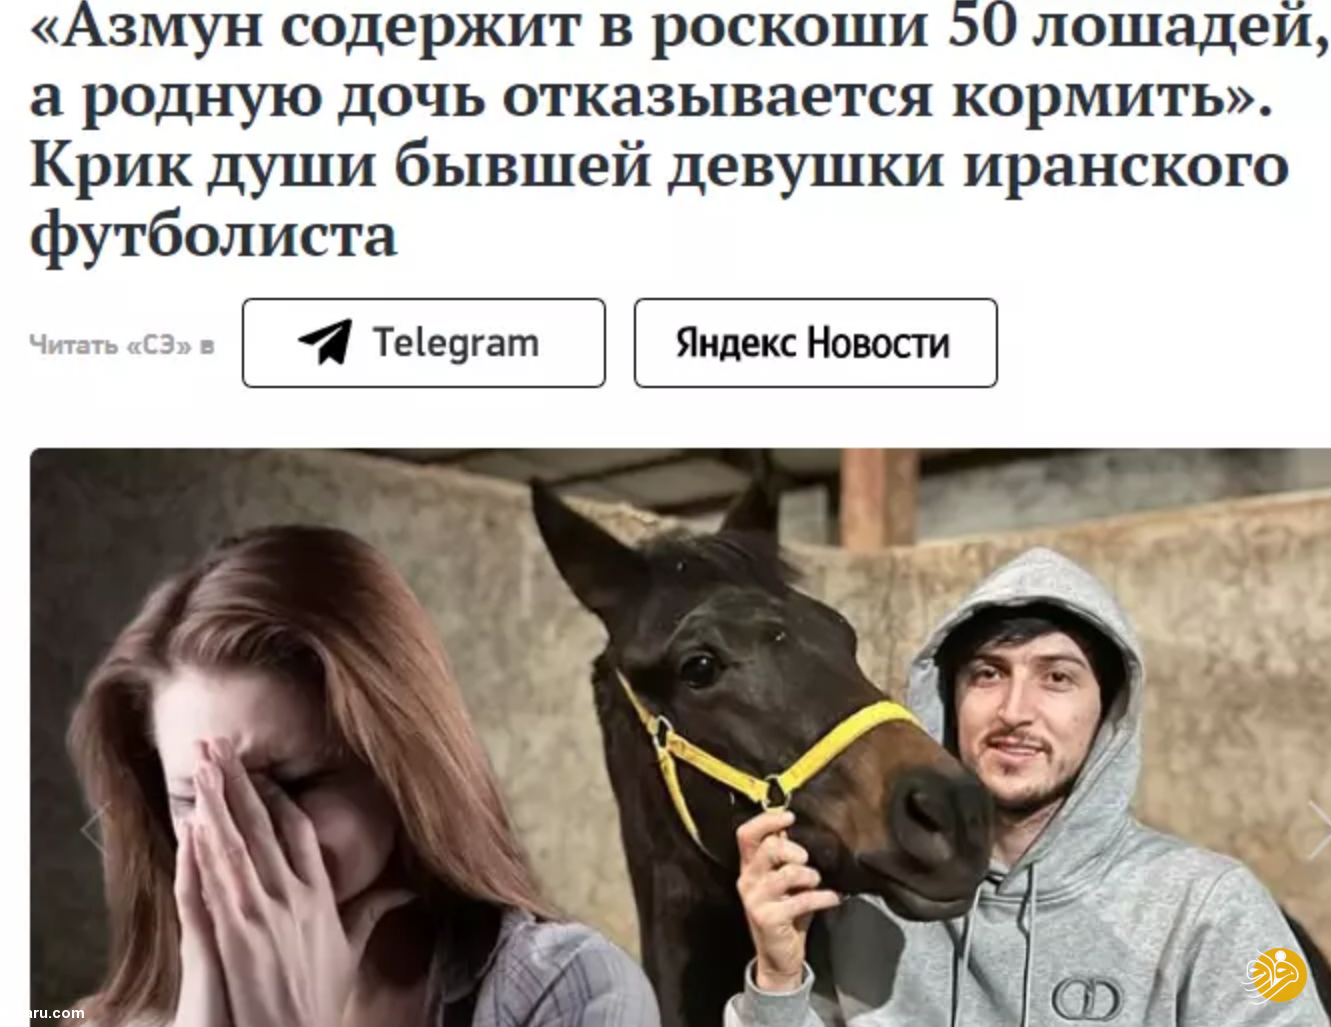 (عکس)دختر روس علیه سردار آزمون: انتظار چنین ظلمی را از او نداشتم